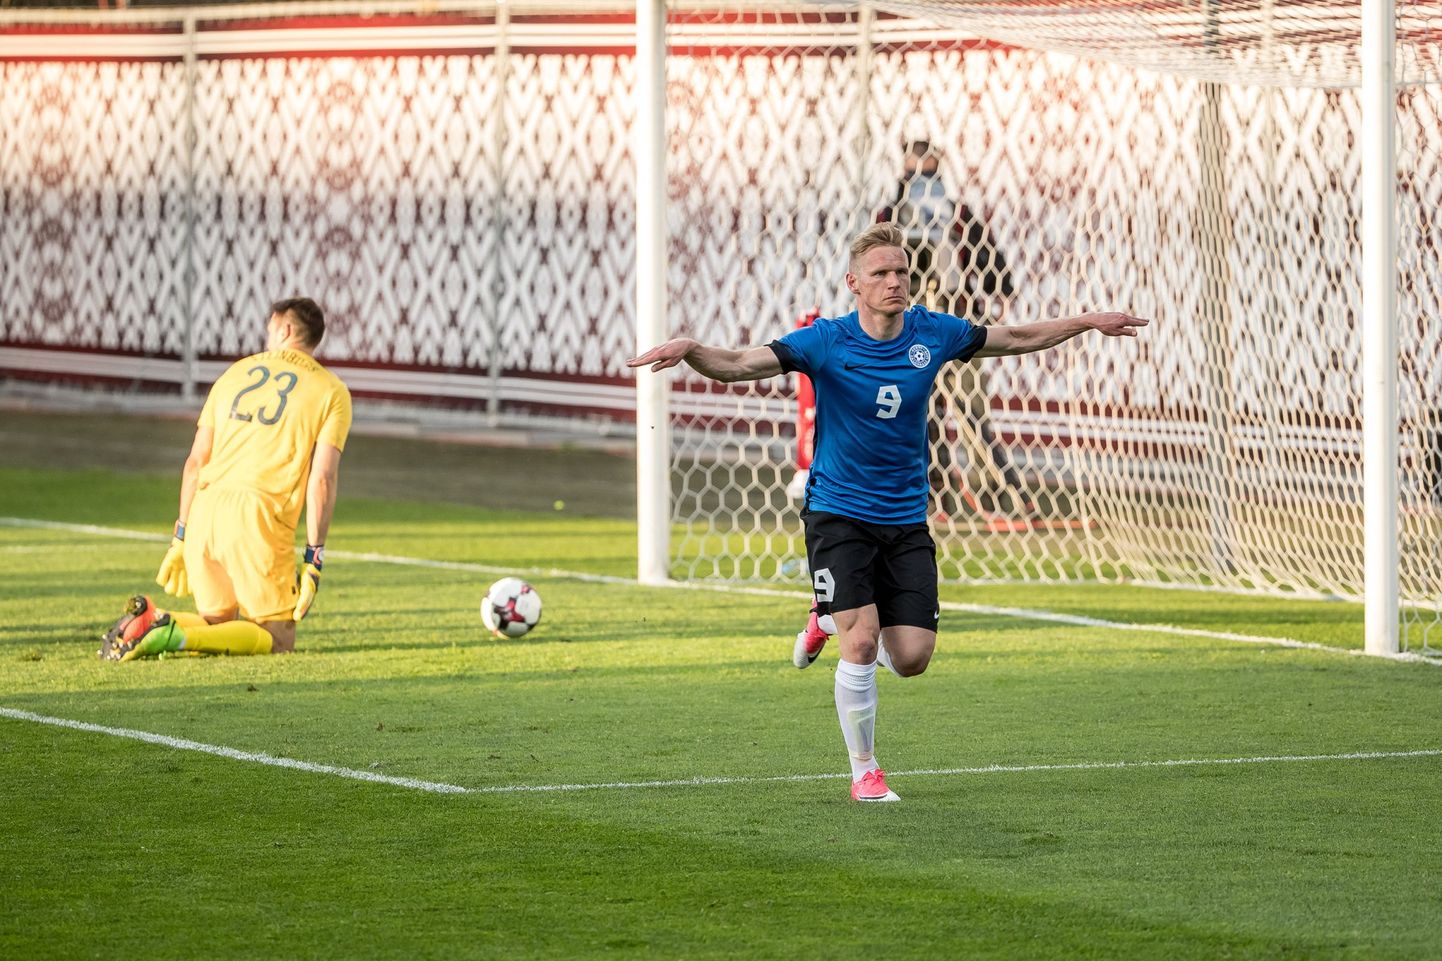 Eesti kohtus viimati Sooga 2015. aasta juunis Turus ja võitis 2:0 tänu Ats Purje kahele tabamusele.